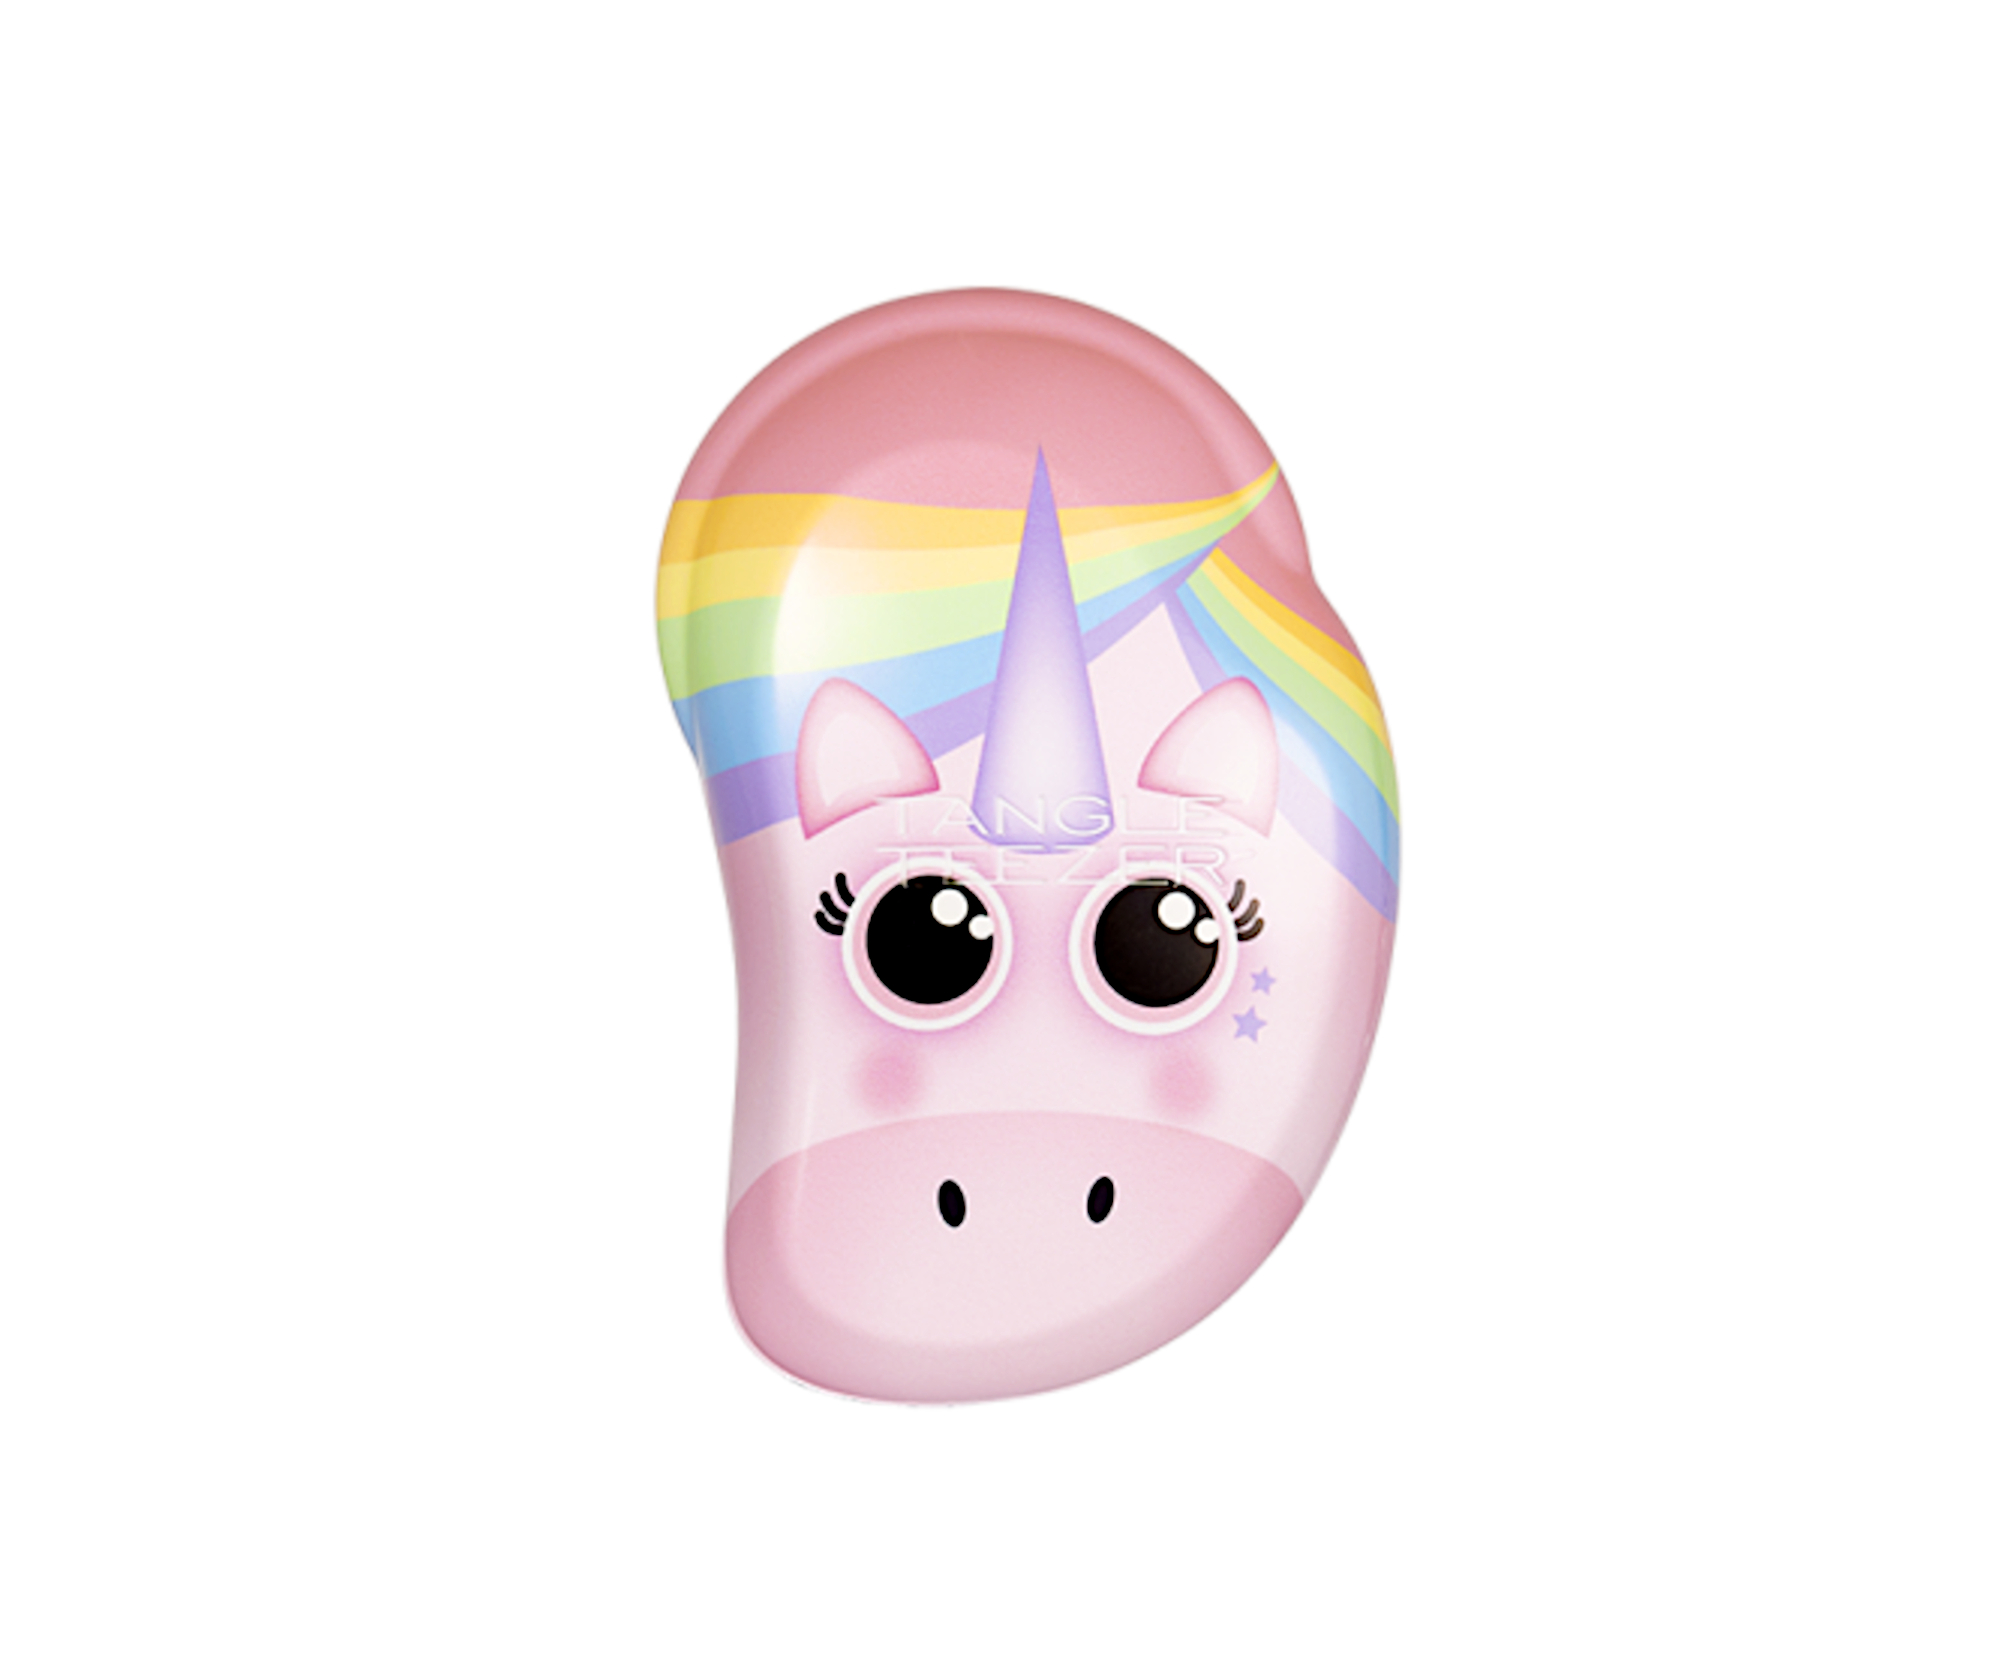 Kartáč na rozčesávání vlasů Tangle Teezer Original Mini Rainbow The Unicorn - růžový s jednorožcem (SOC-PU-010319) + DÁREK ZDARMA